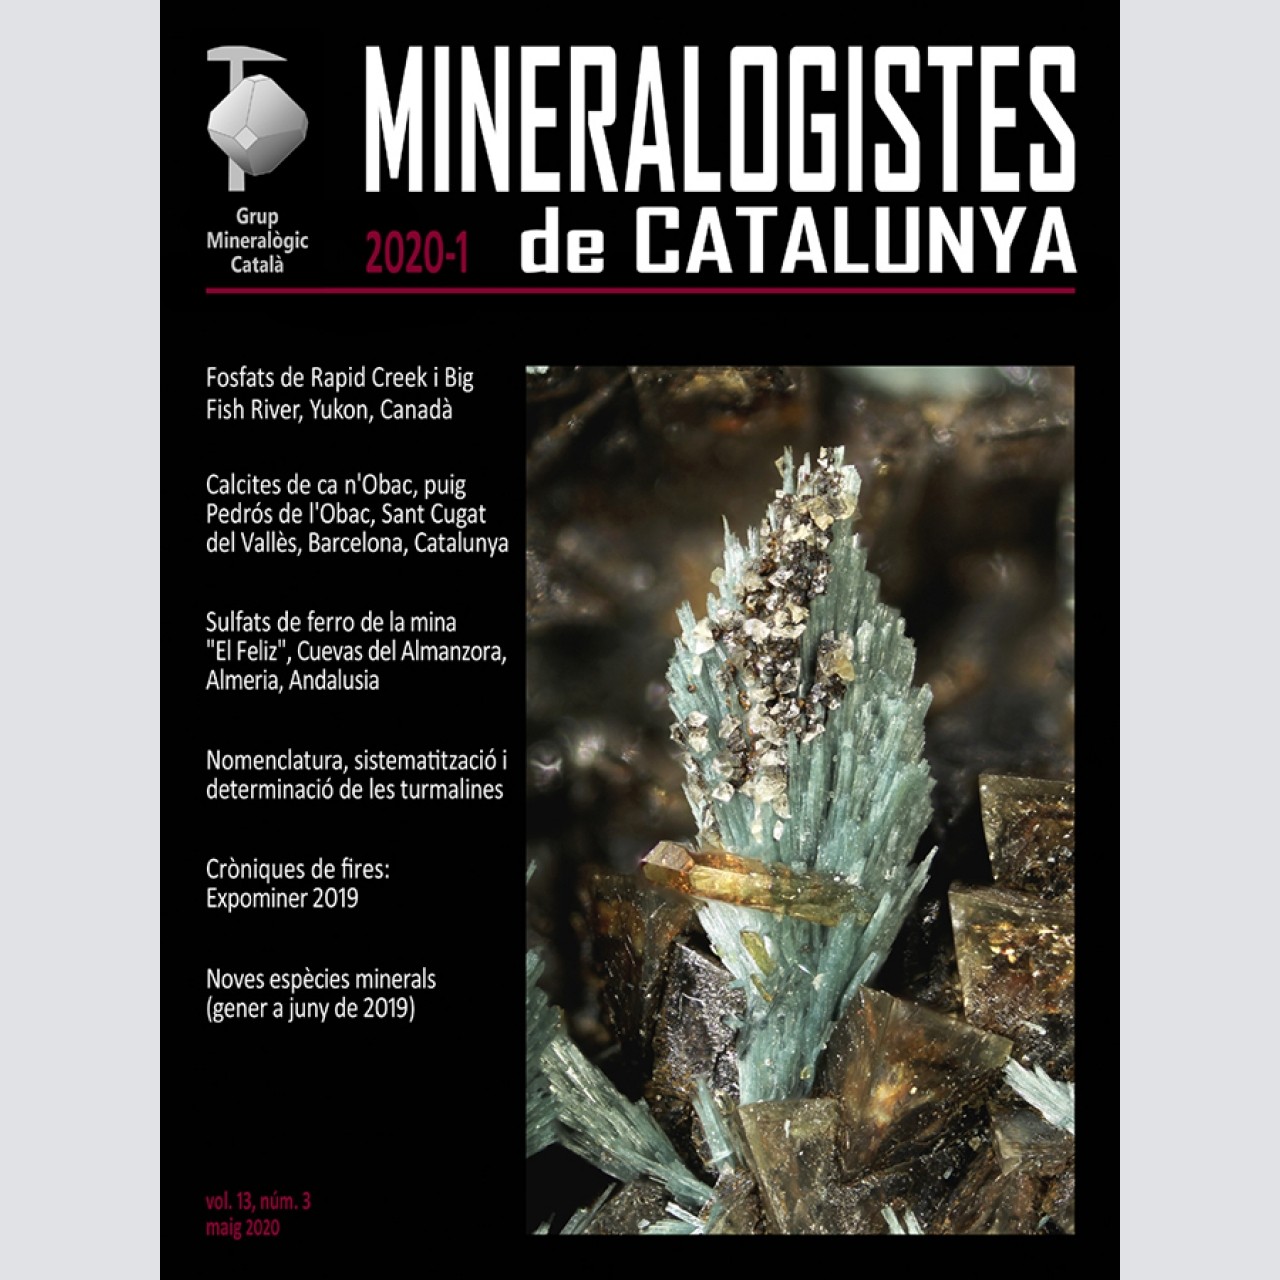 Mineralogistes de Catalunya (2020-1)